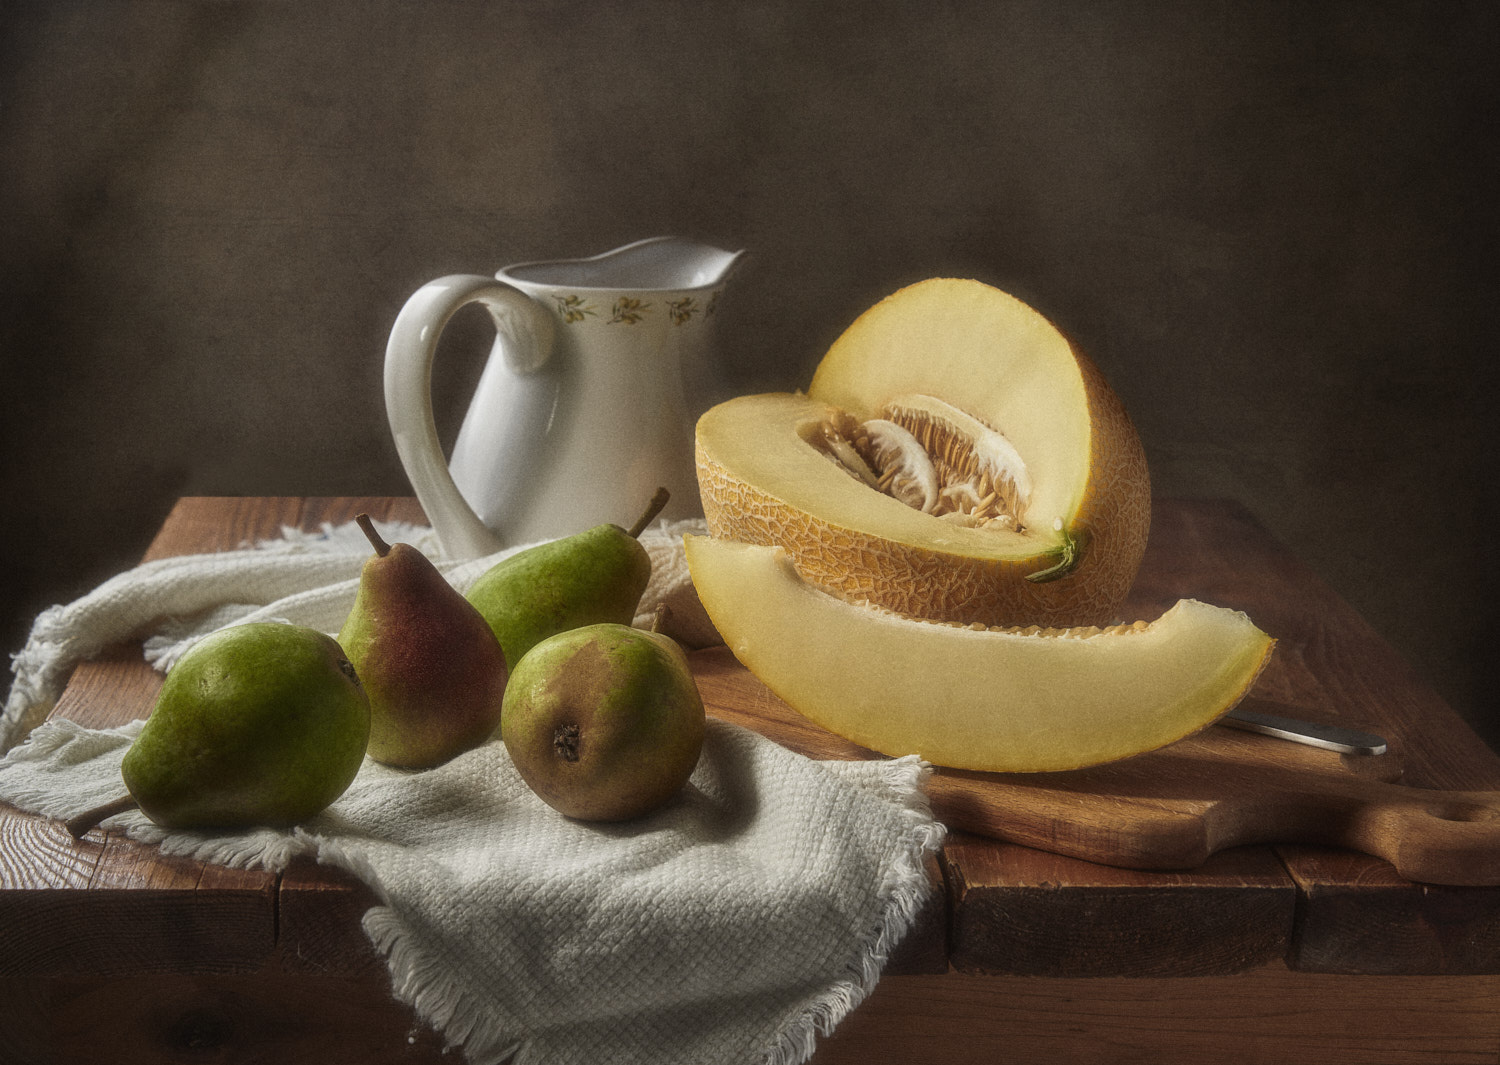 Дыня и груши натюрморт композиция постановка сцена плоды еда фрукты груши дыня кувшин